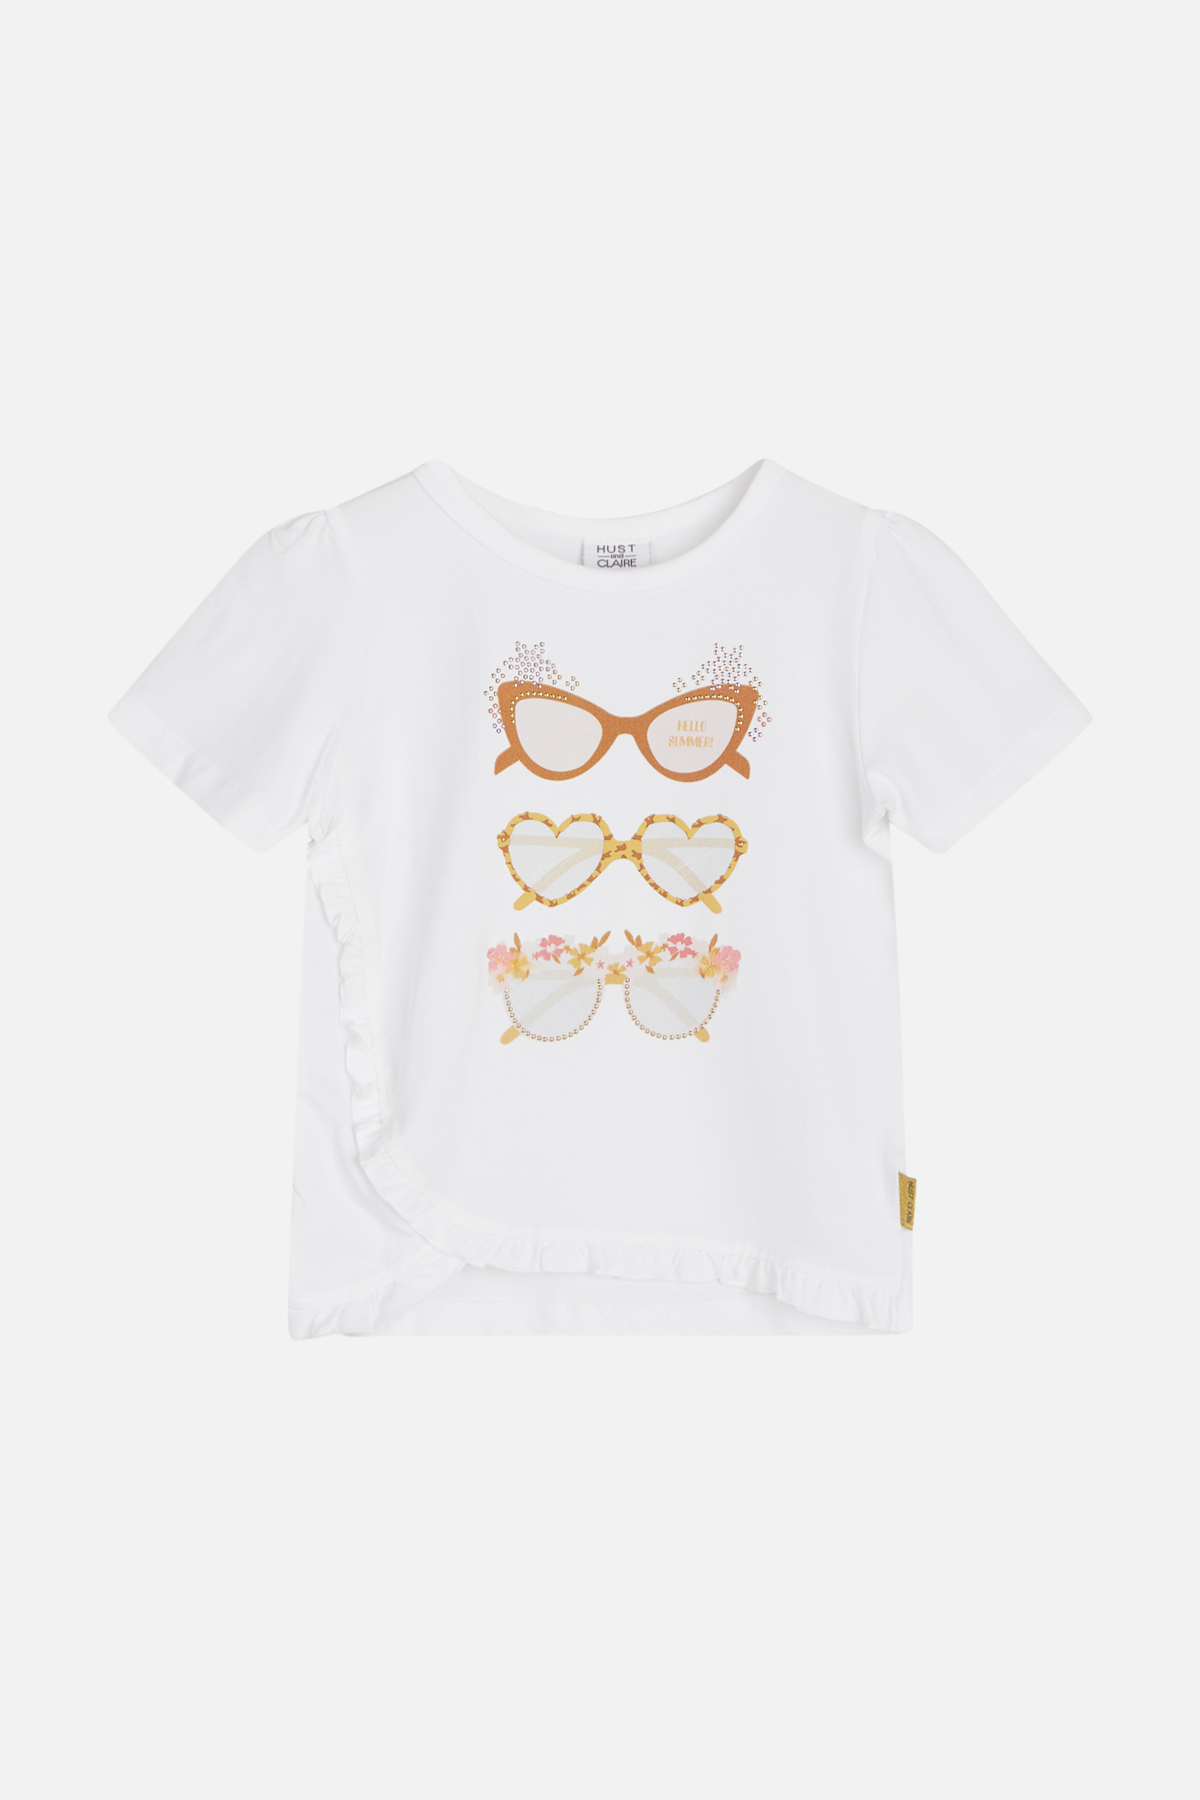 T-Shirt beige/braun/weiß Hust and Claire Brillen